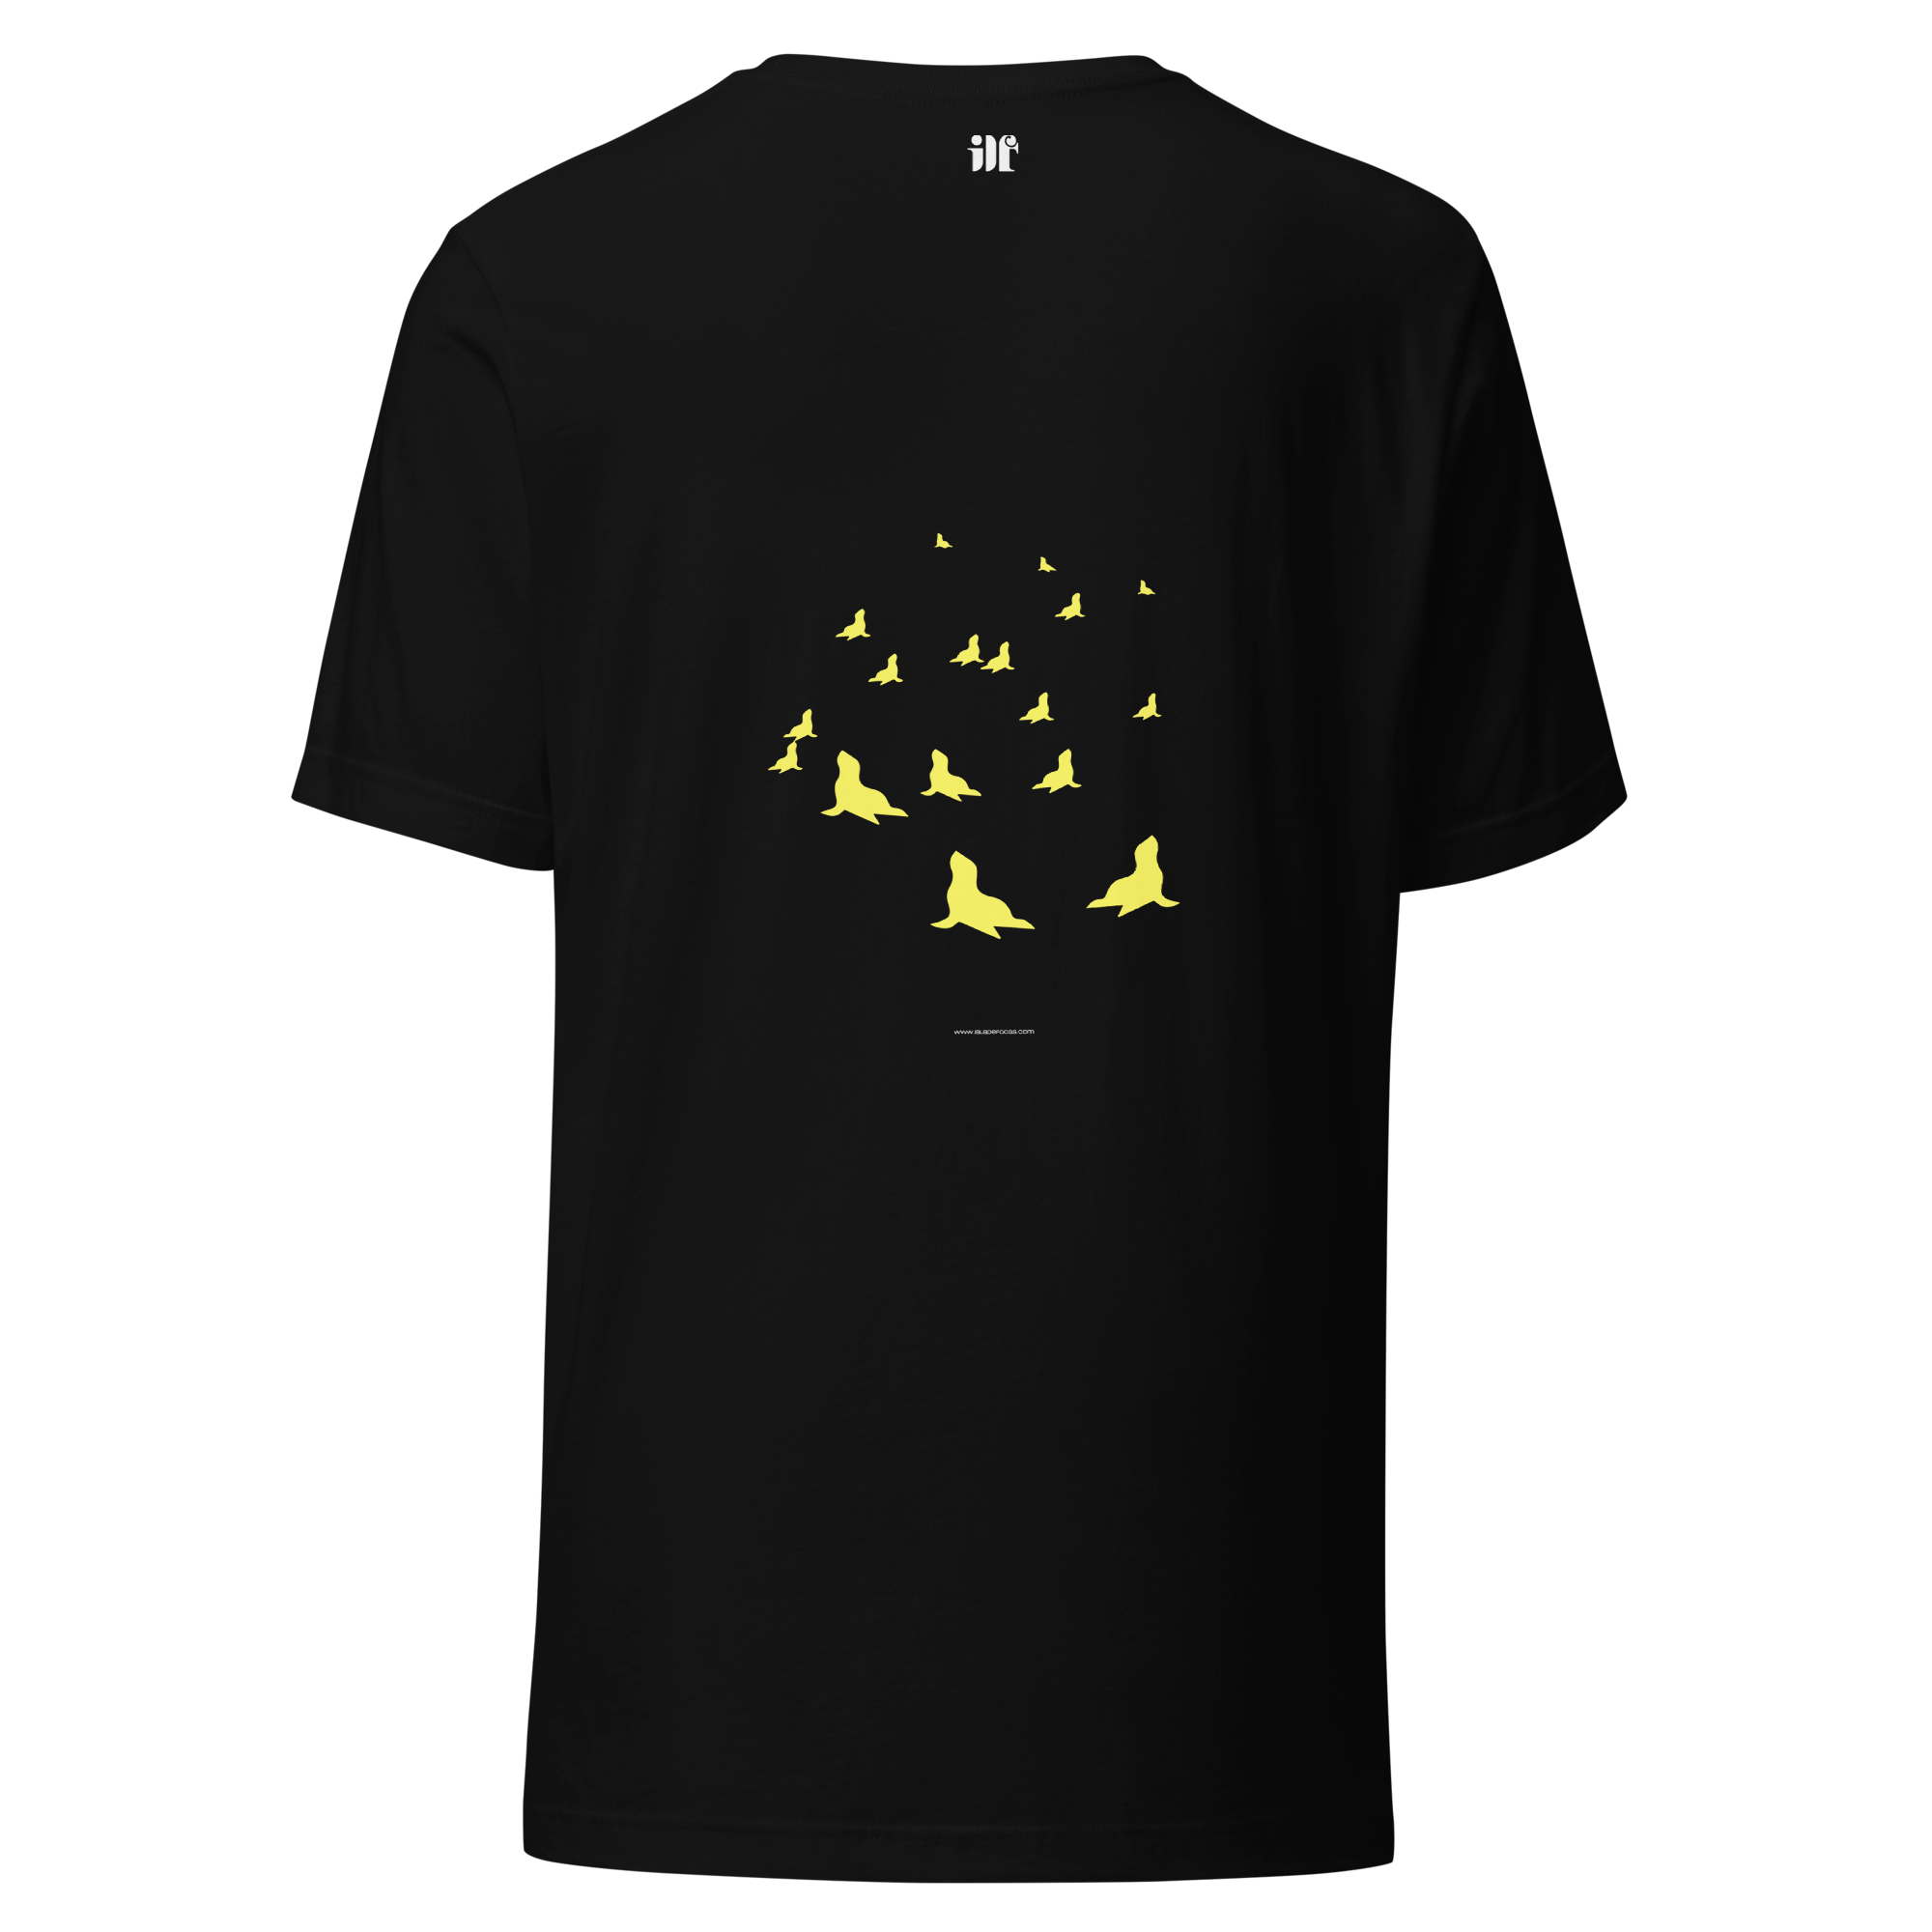 unisex-staple-t-shirt-black-back-662a44112d3de.png